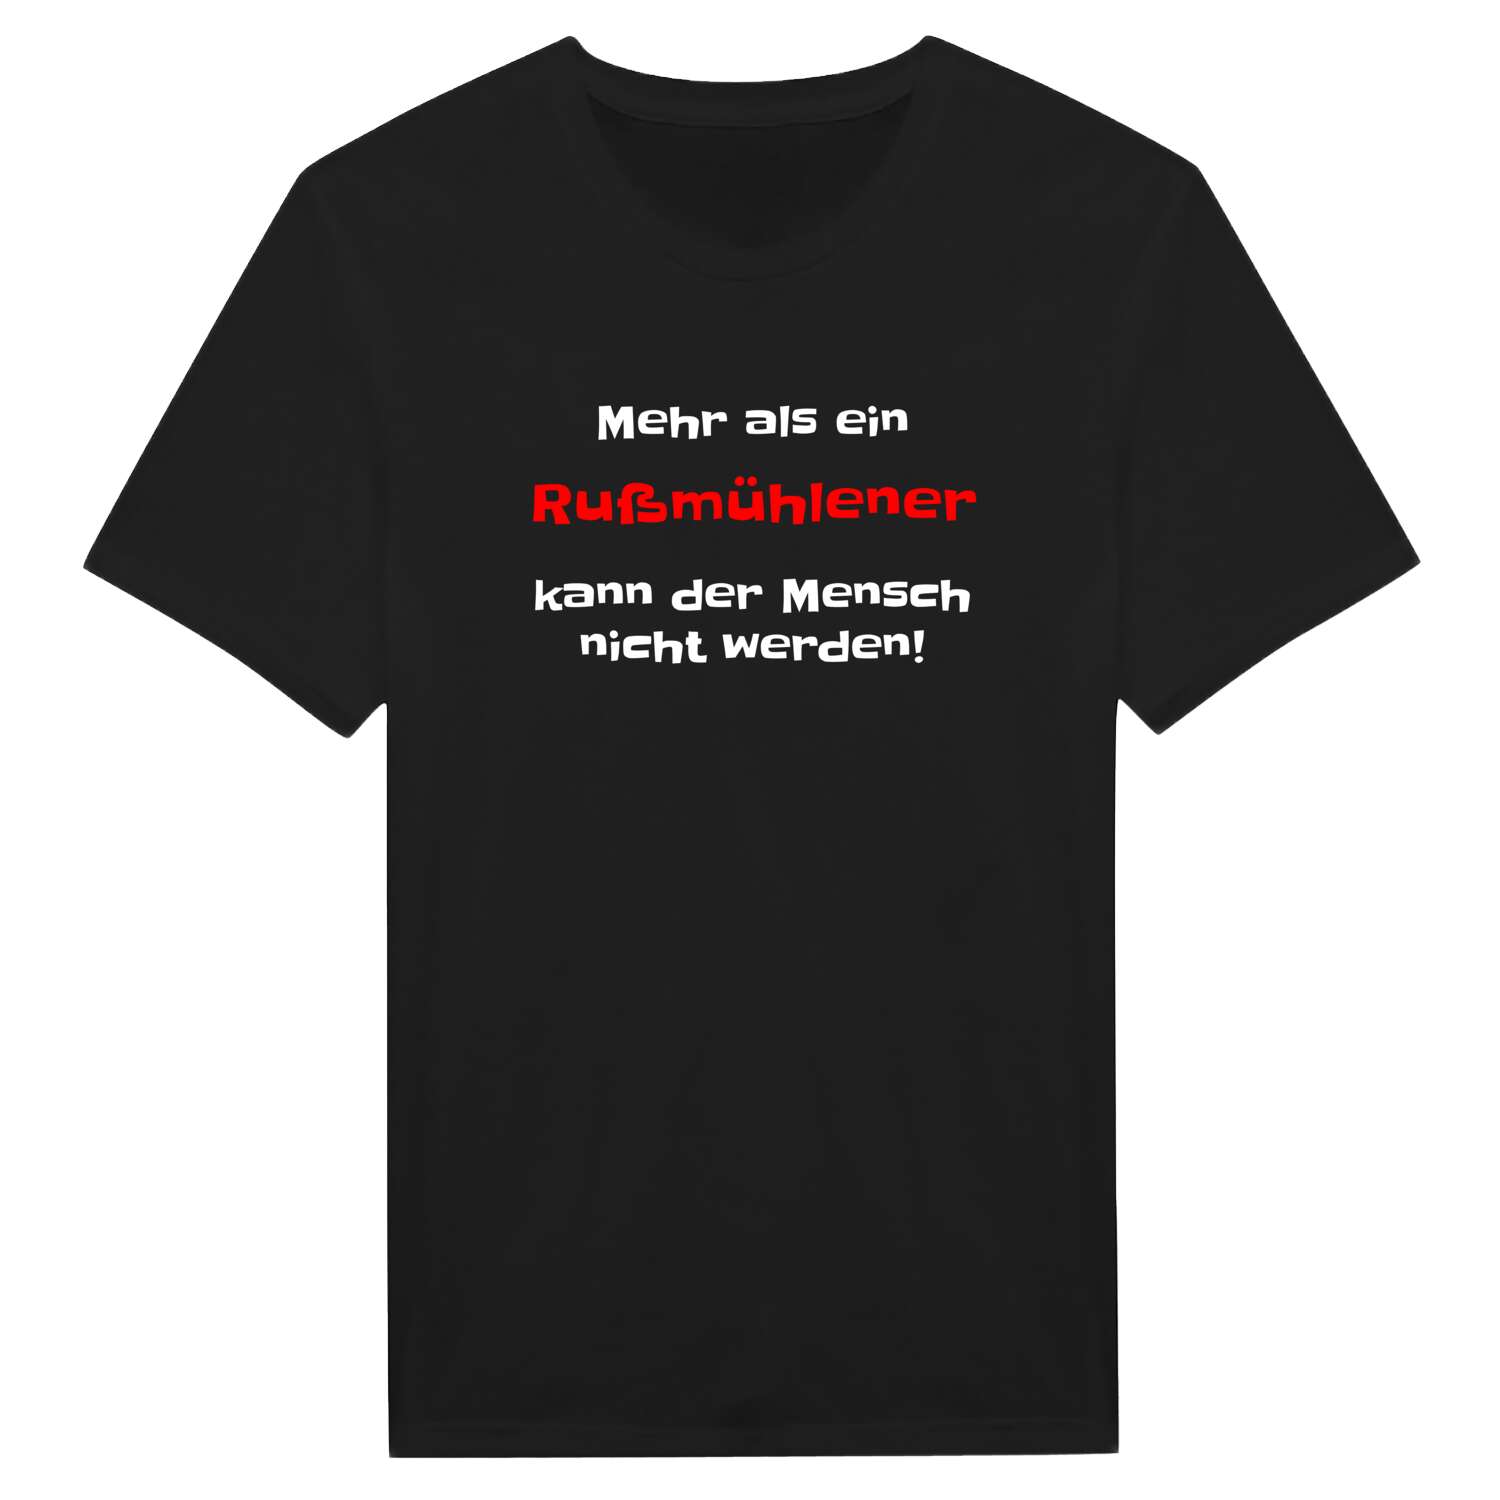 Rußmühle T-Shirt »Mehr als ein«